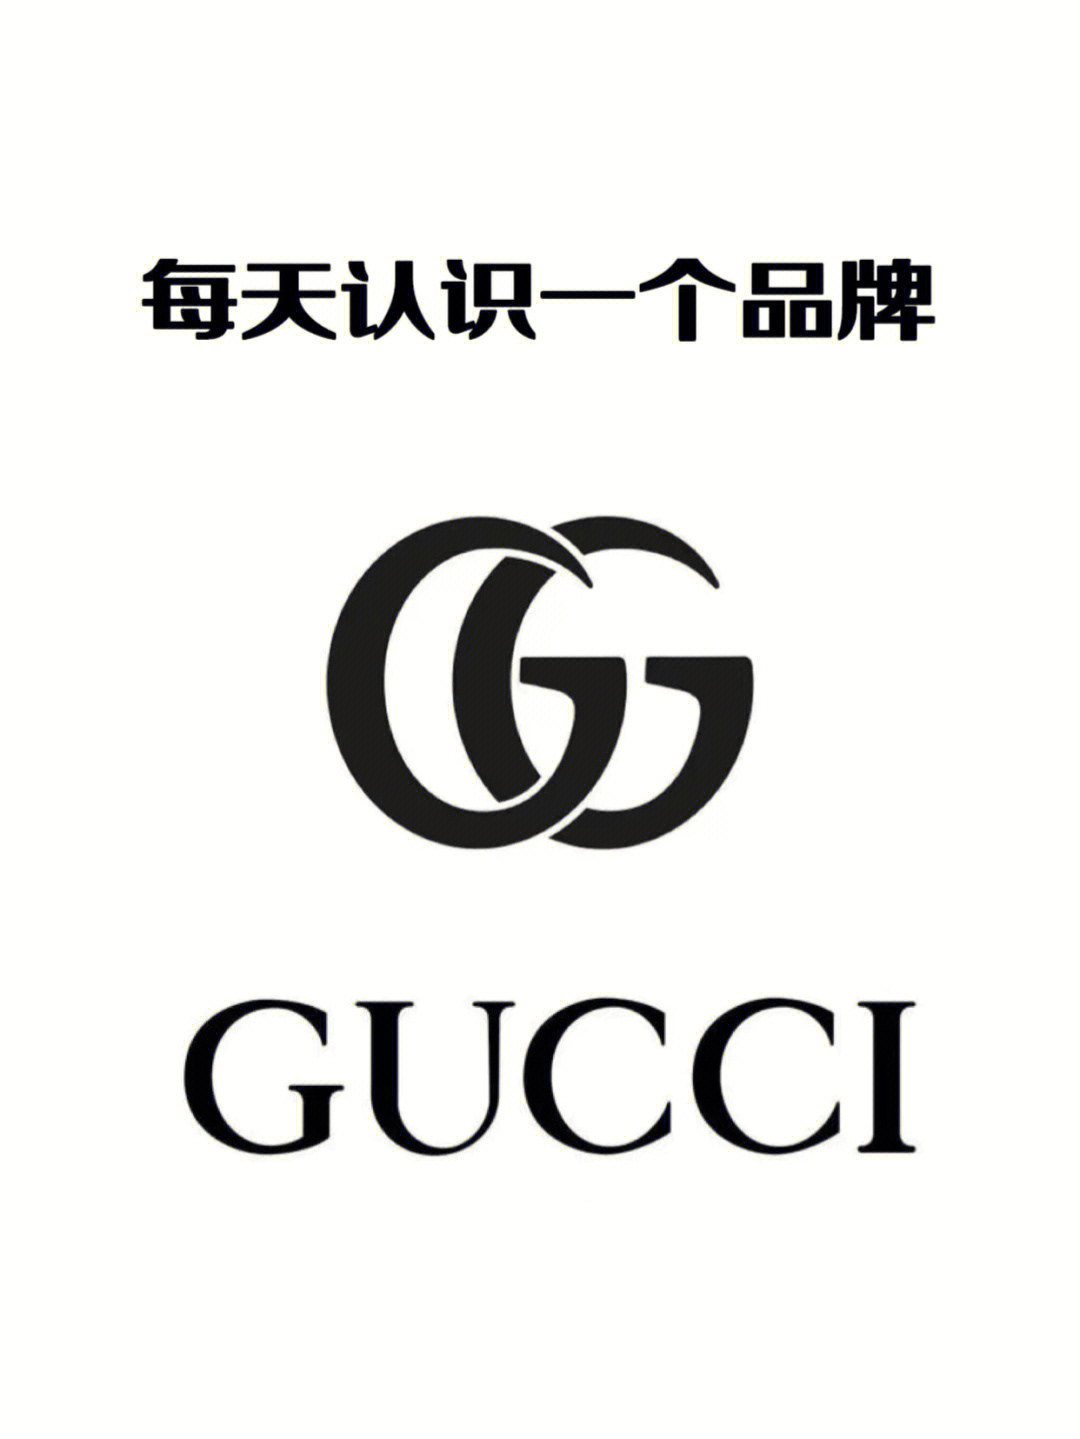 gucci标志有几种图片图片